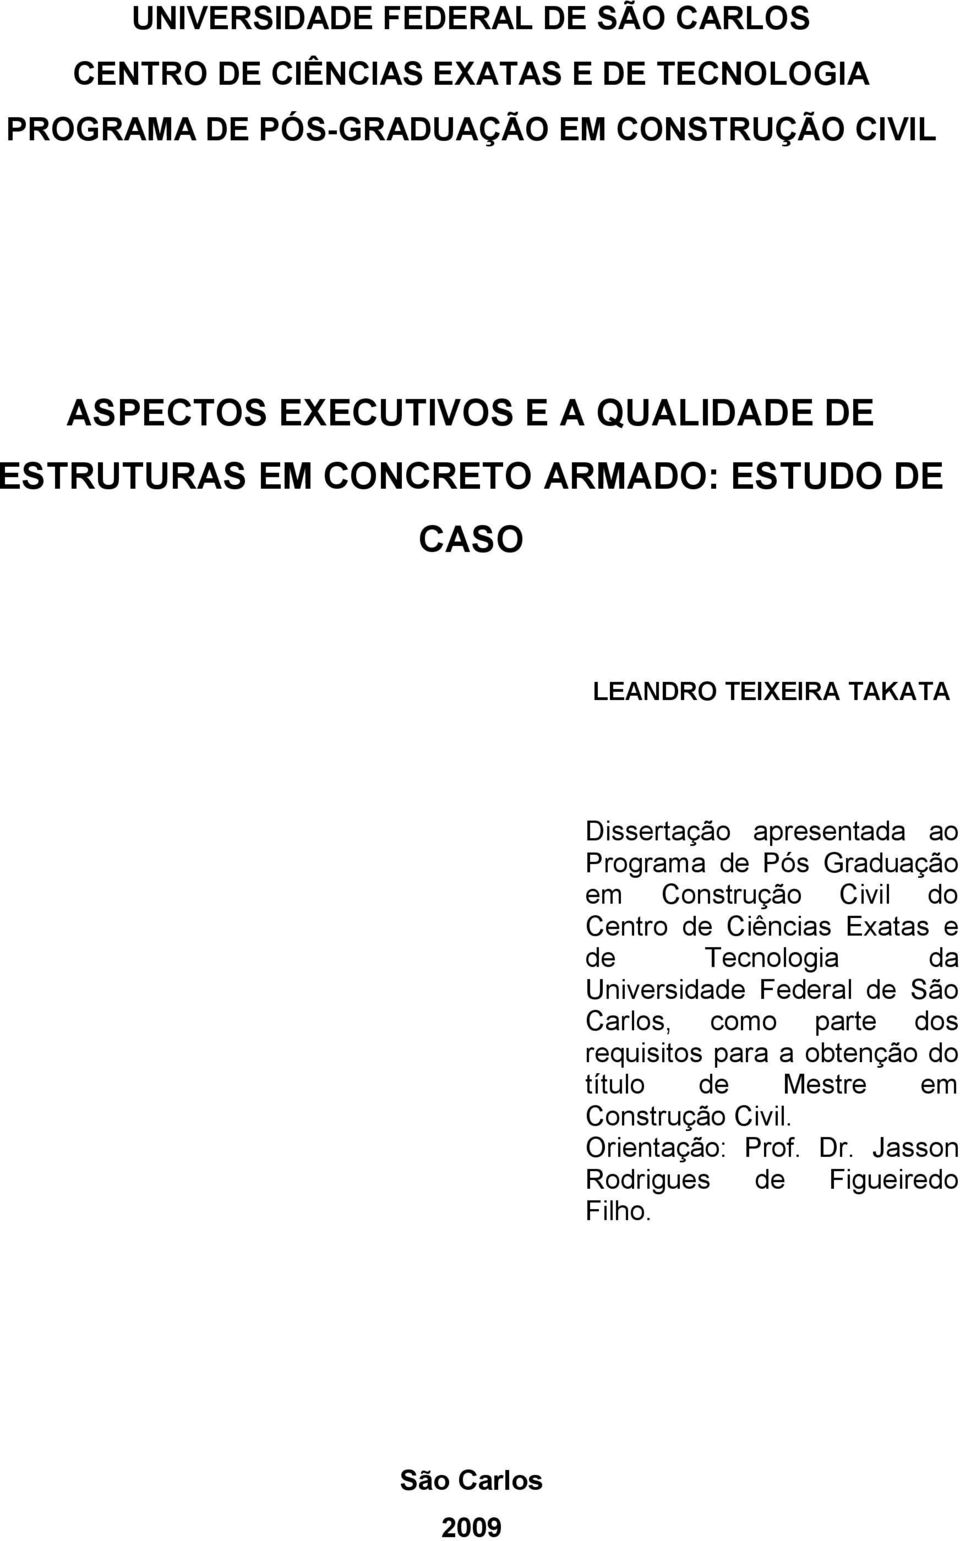 Pós Graduação em Construção Civil do Centro de Ciências Exatas e de Tecnologia da Universidade Federal de São Carlos, como parte dos